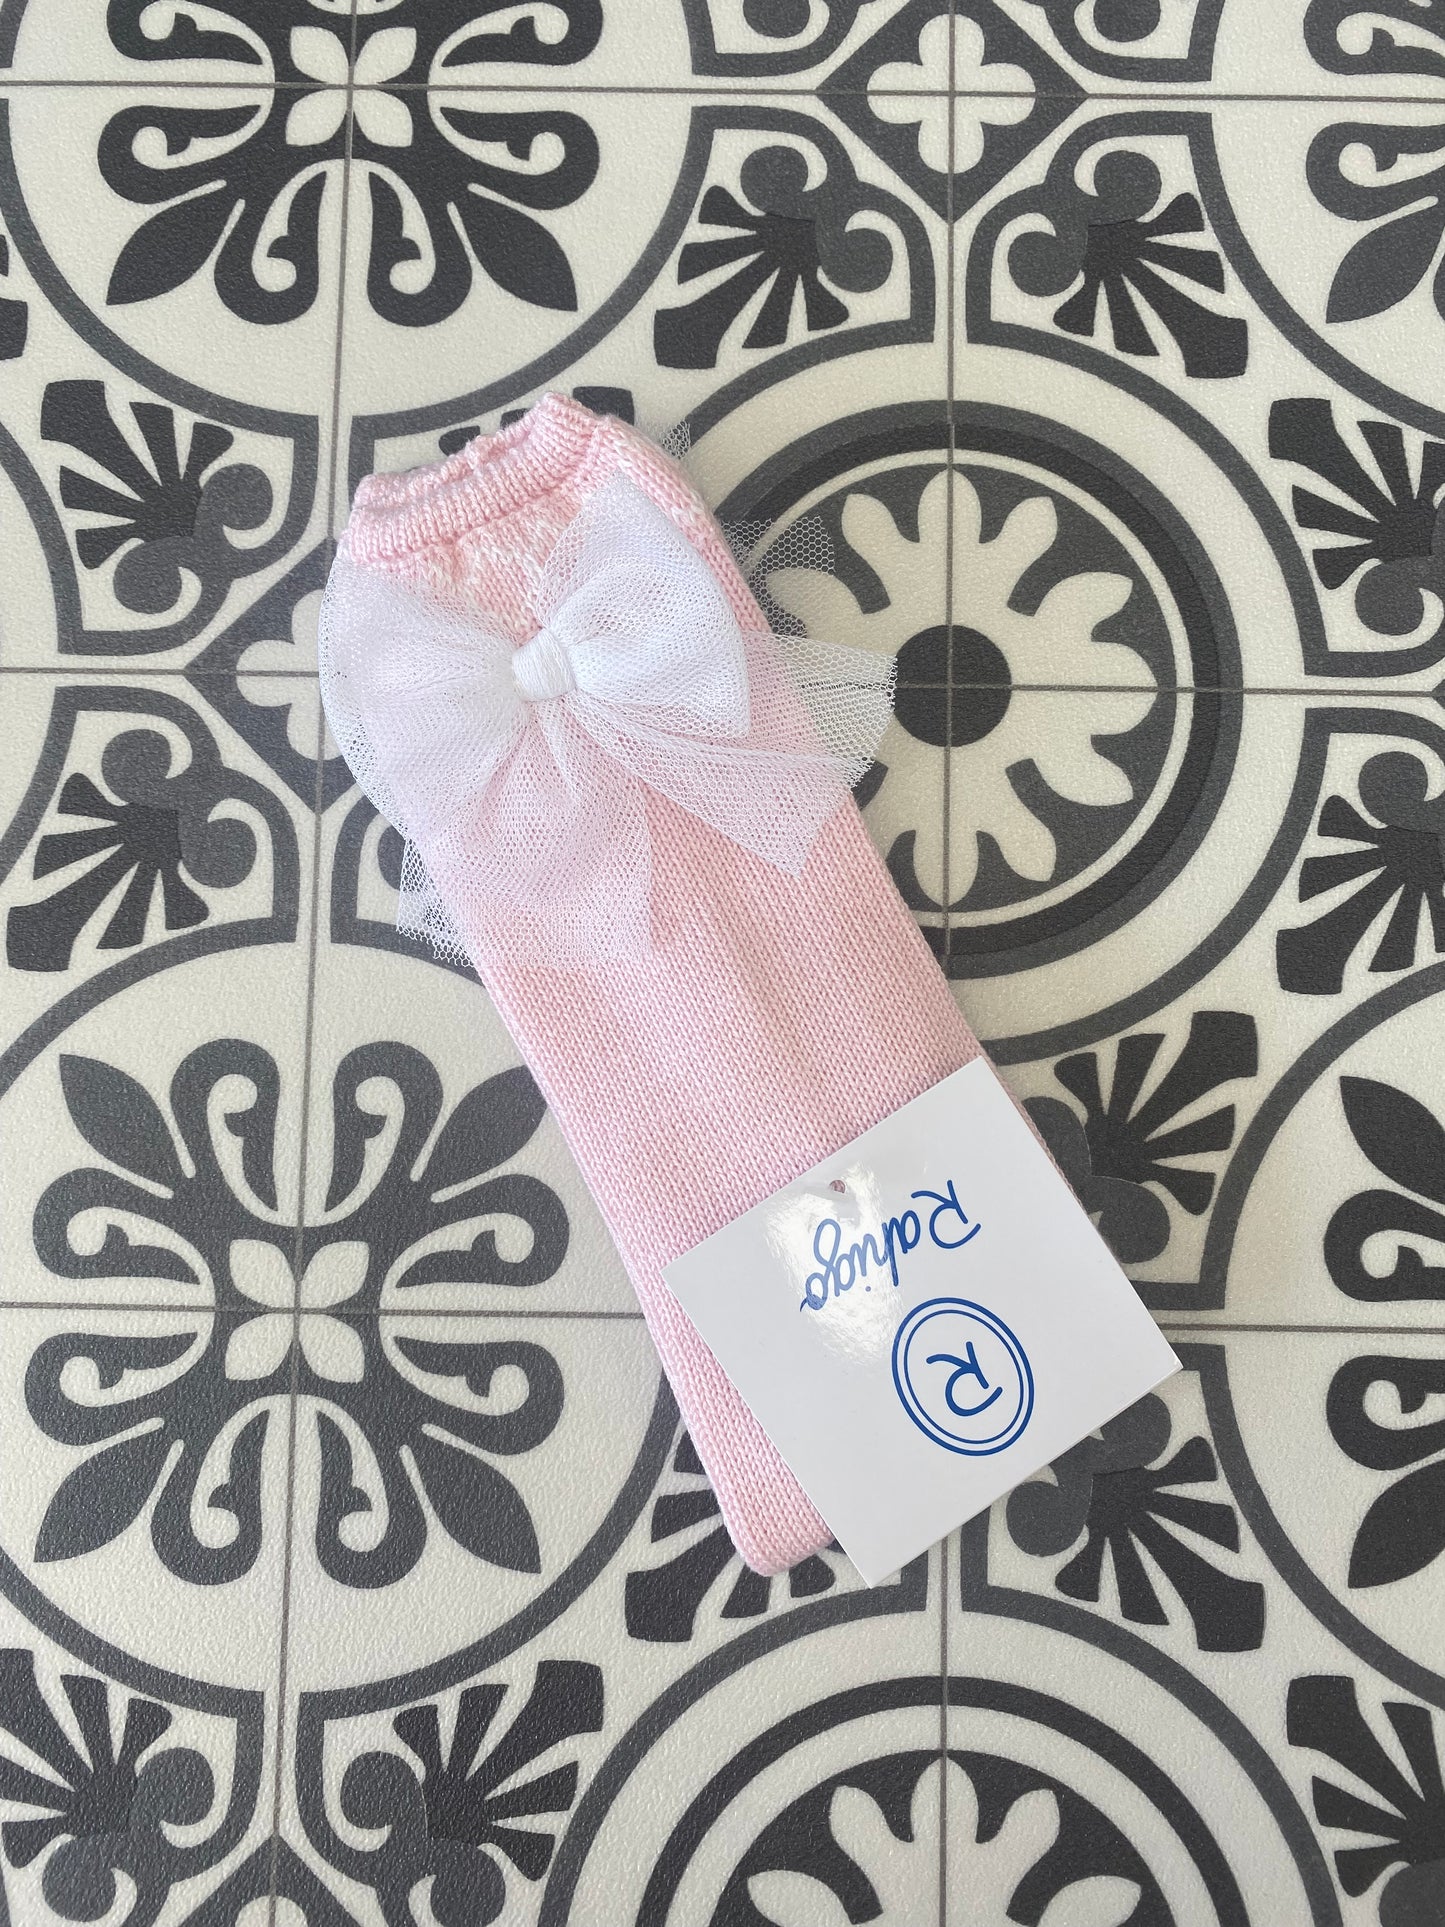 RAHIGO Pink & White Girls Tulle Bow Socks - NON RETURNABLE